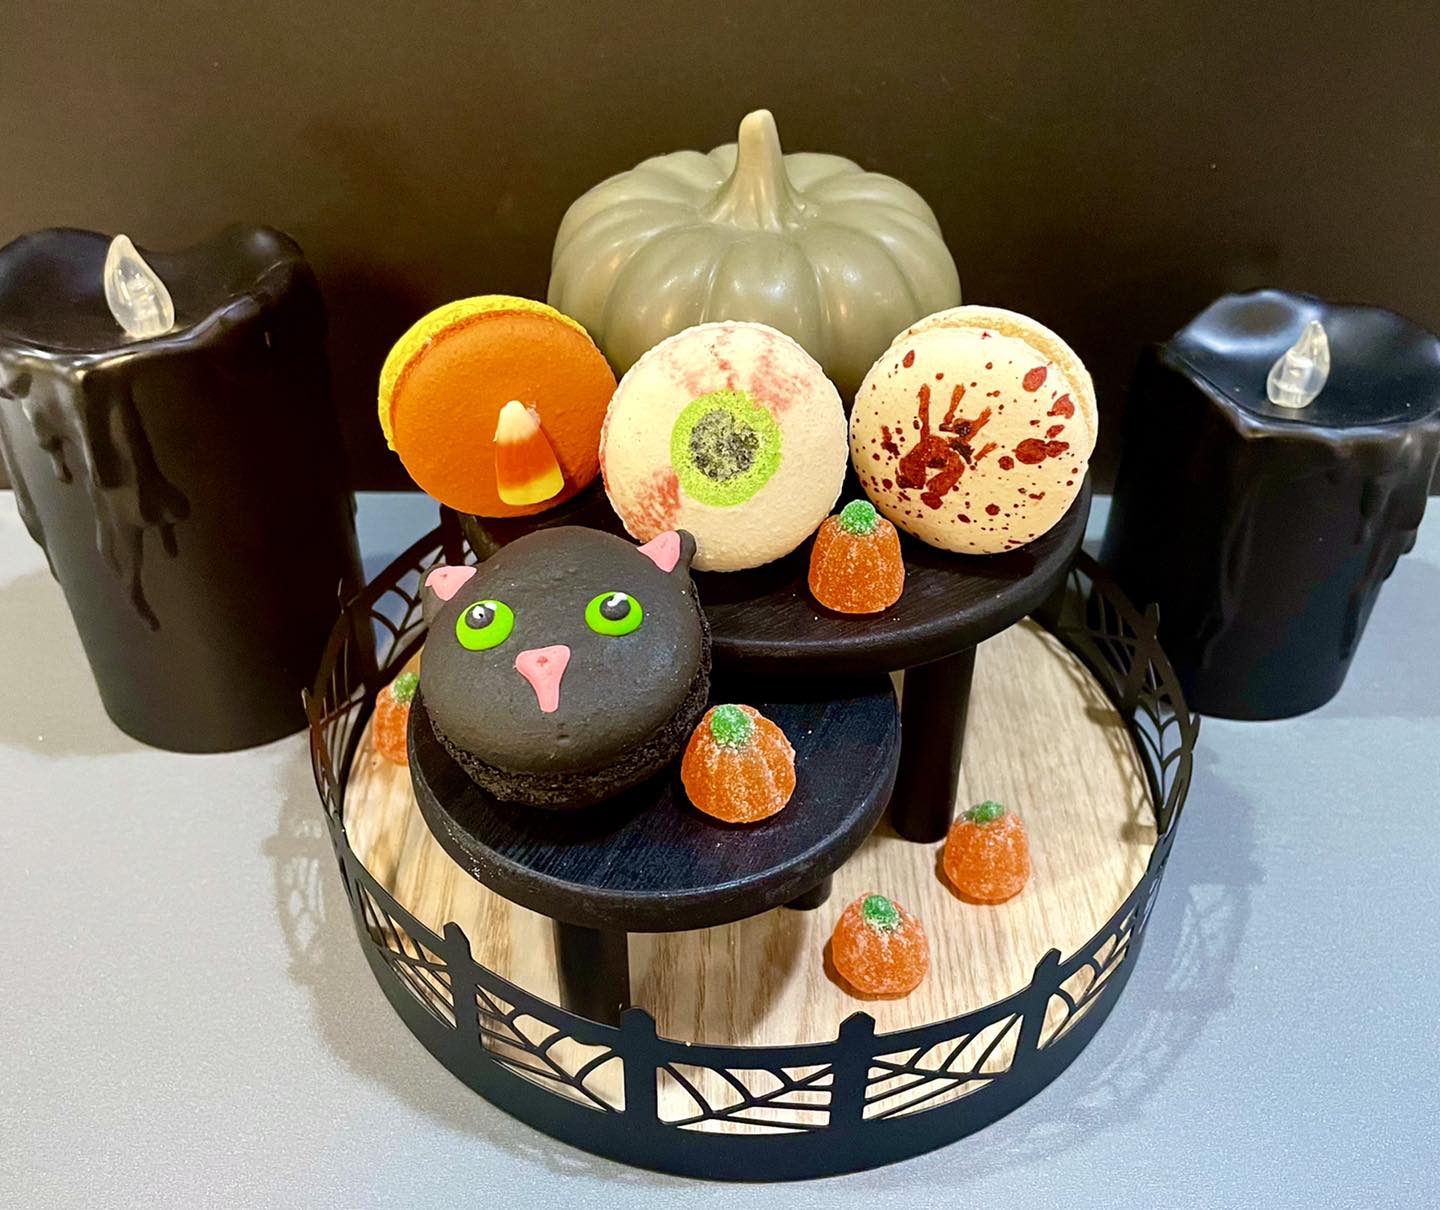 An assortment of Halloween-themed macarons